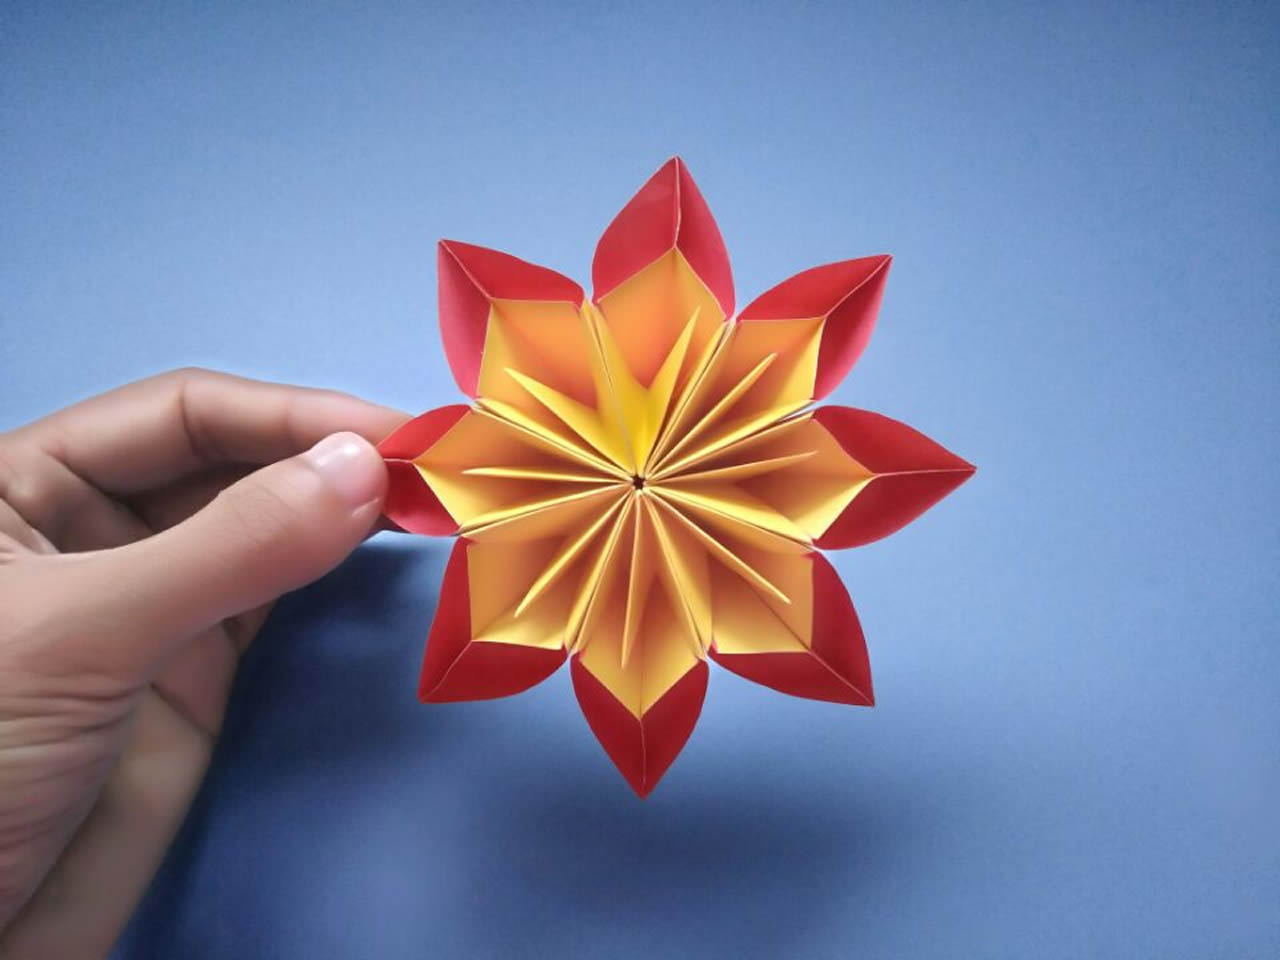 玫瑰叶子折纸教程 超简单超逼真 几步搞定 - 知乎